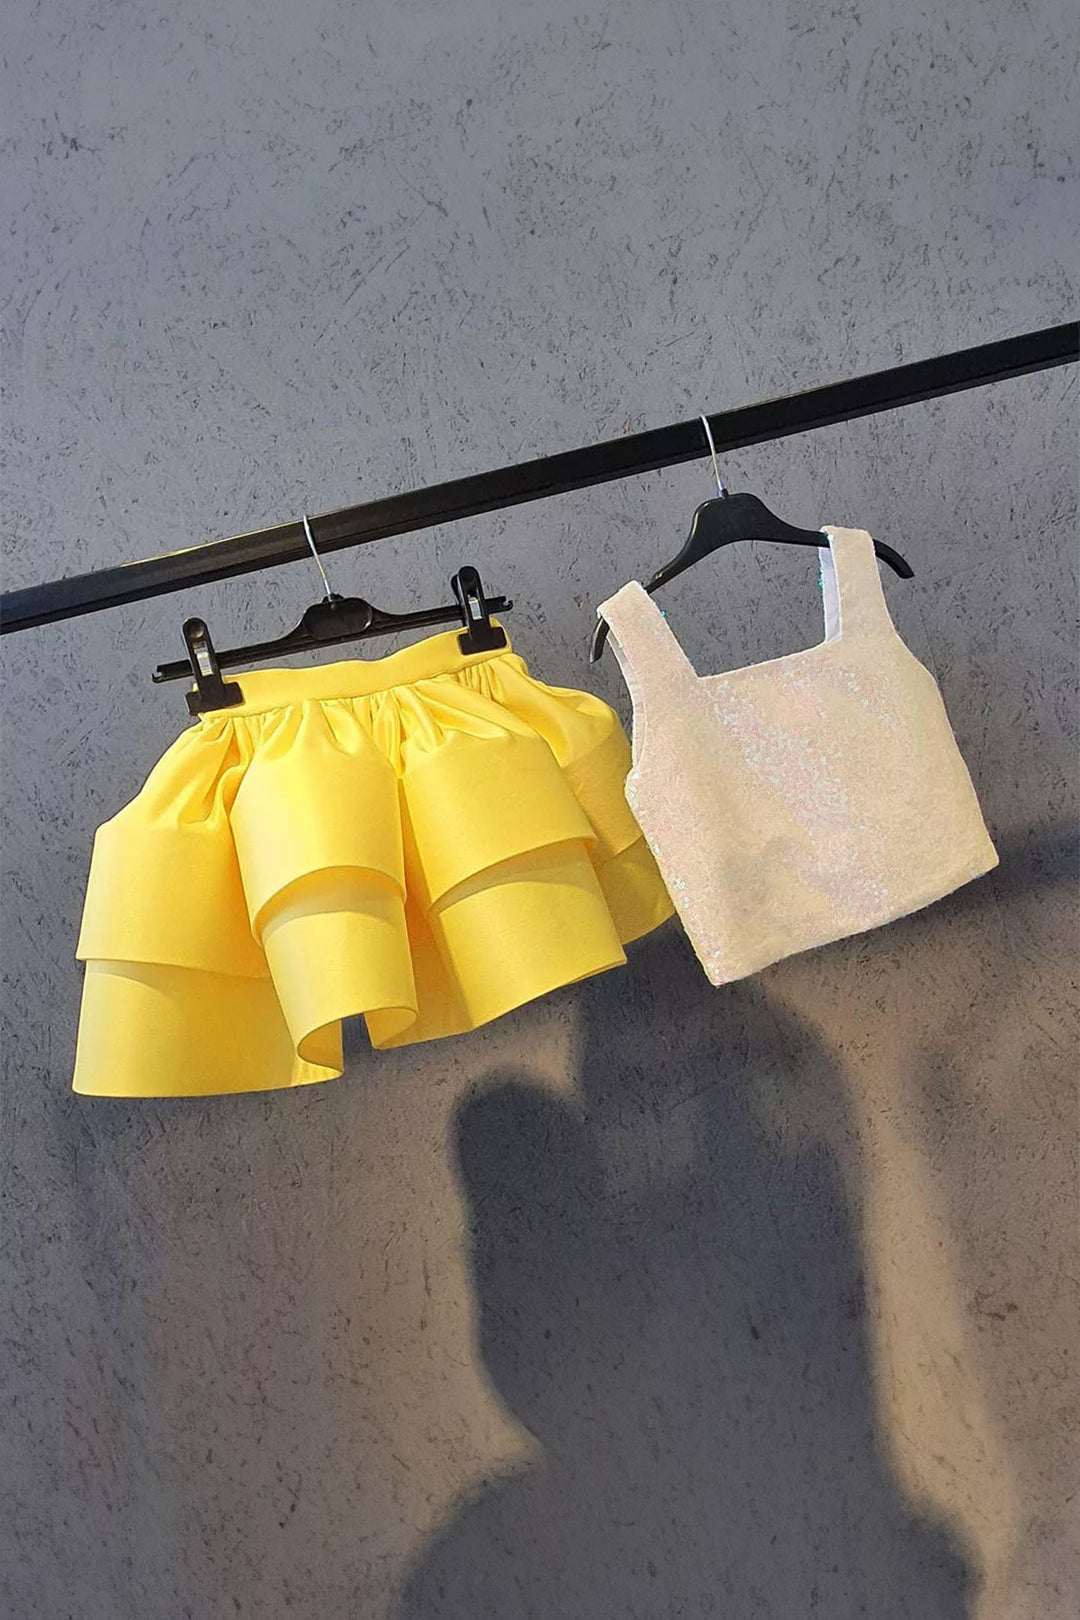 Alice Yellow Skirt White Blouse Set